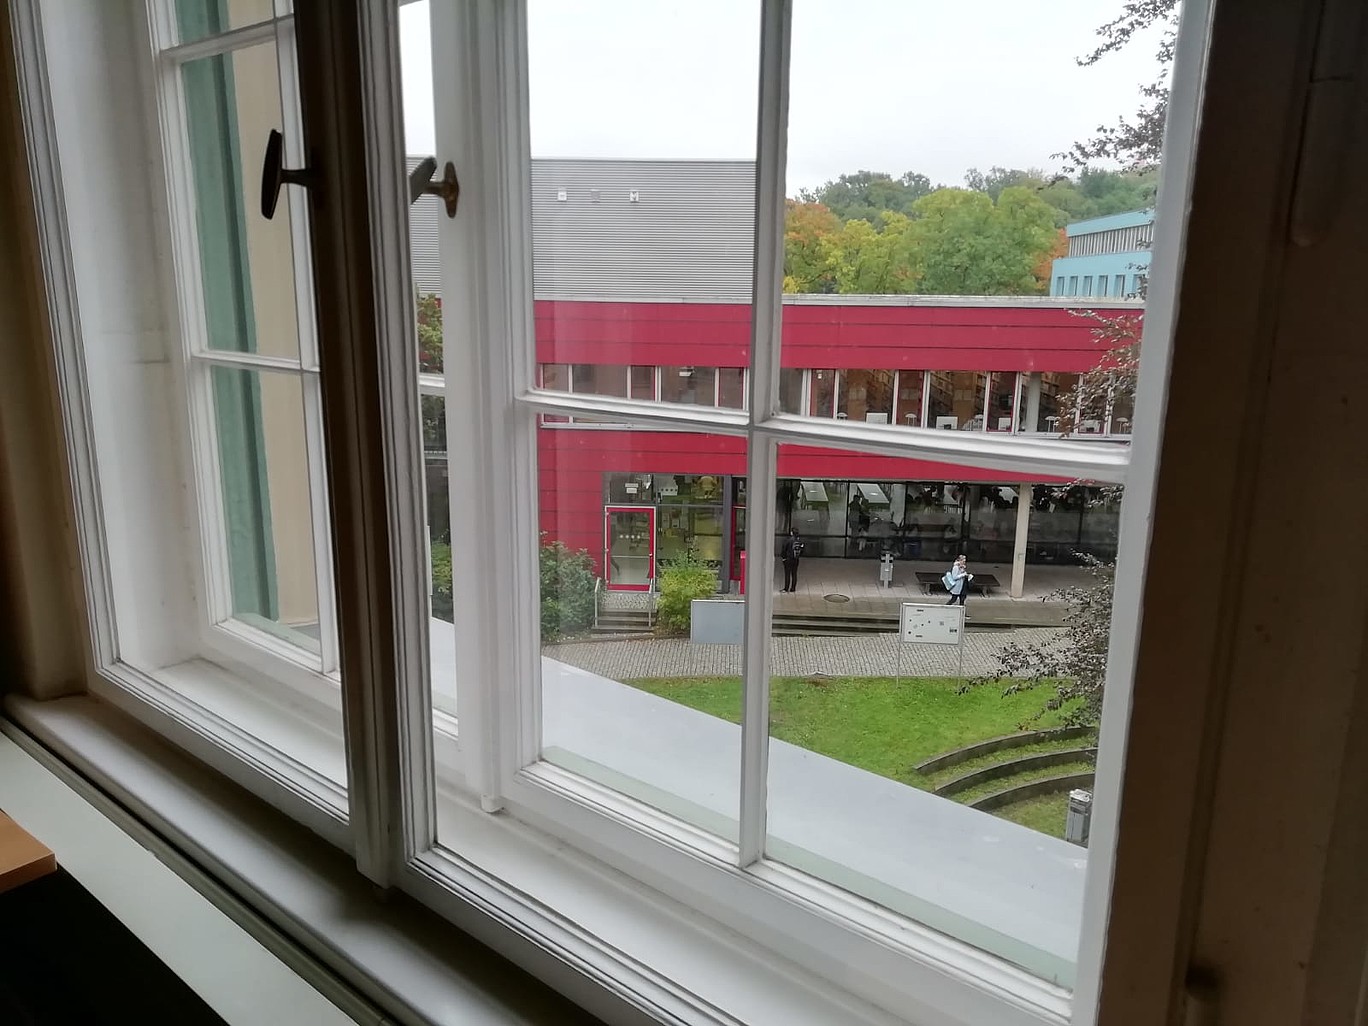 Blick aus dem Fenster auf den Campus